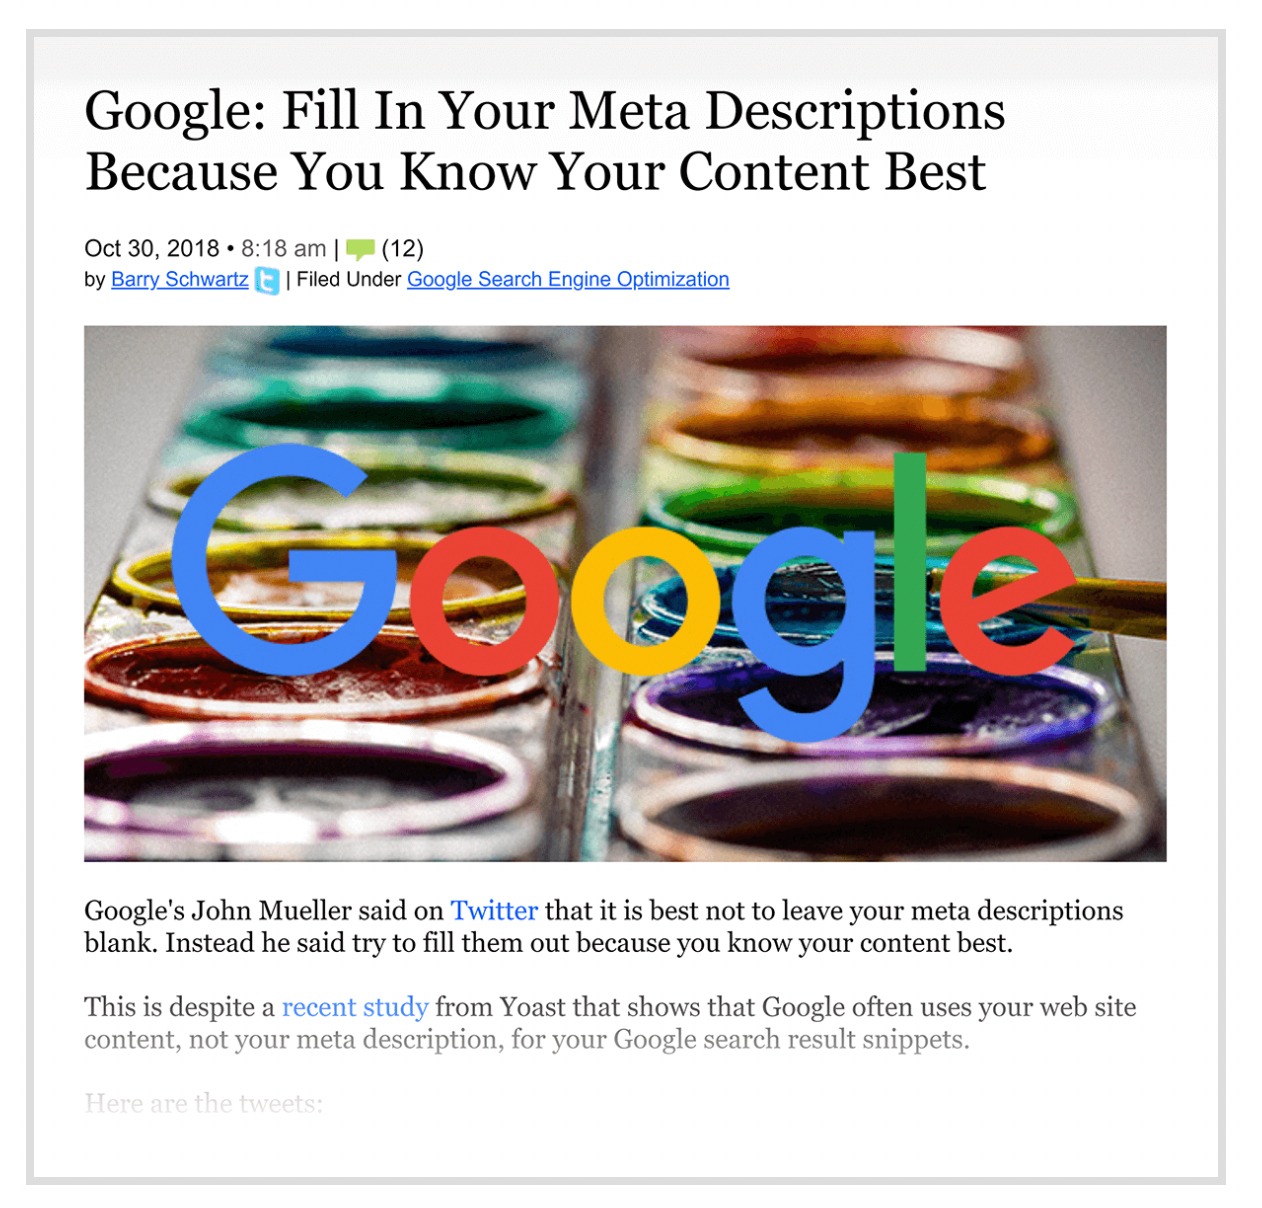 Google says to fill meta descriptions